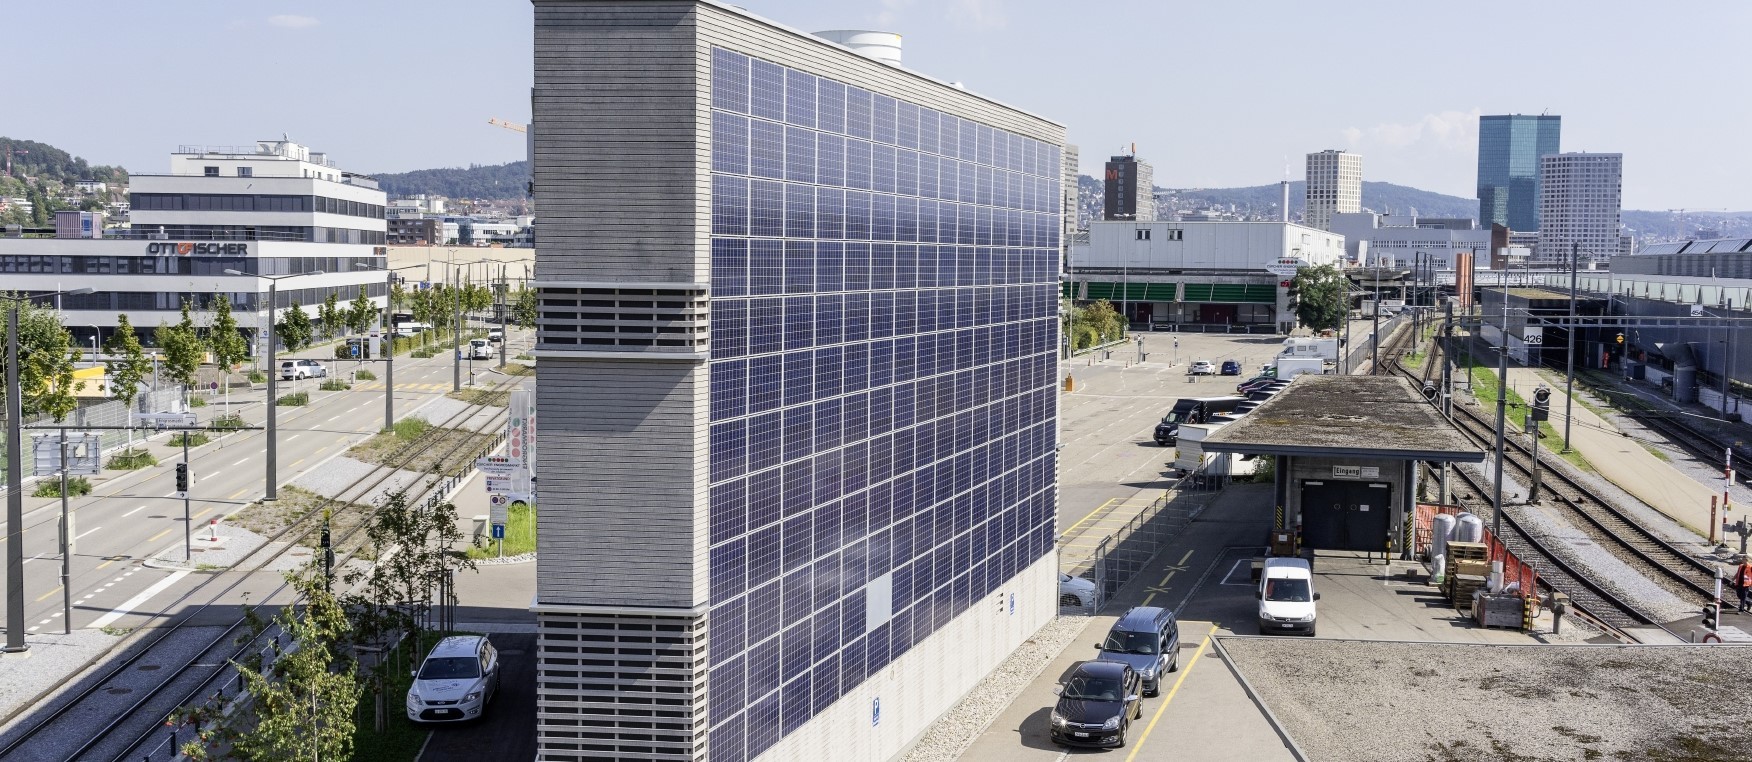 Solaranlage an Fassade von einem Gebäude